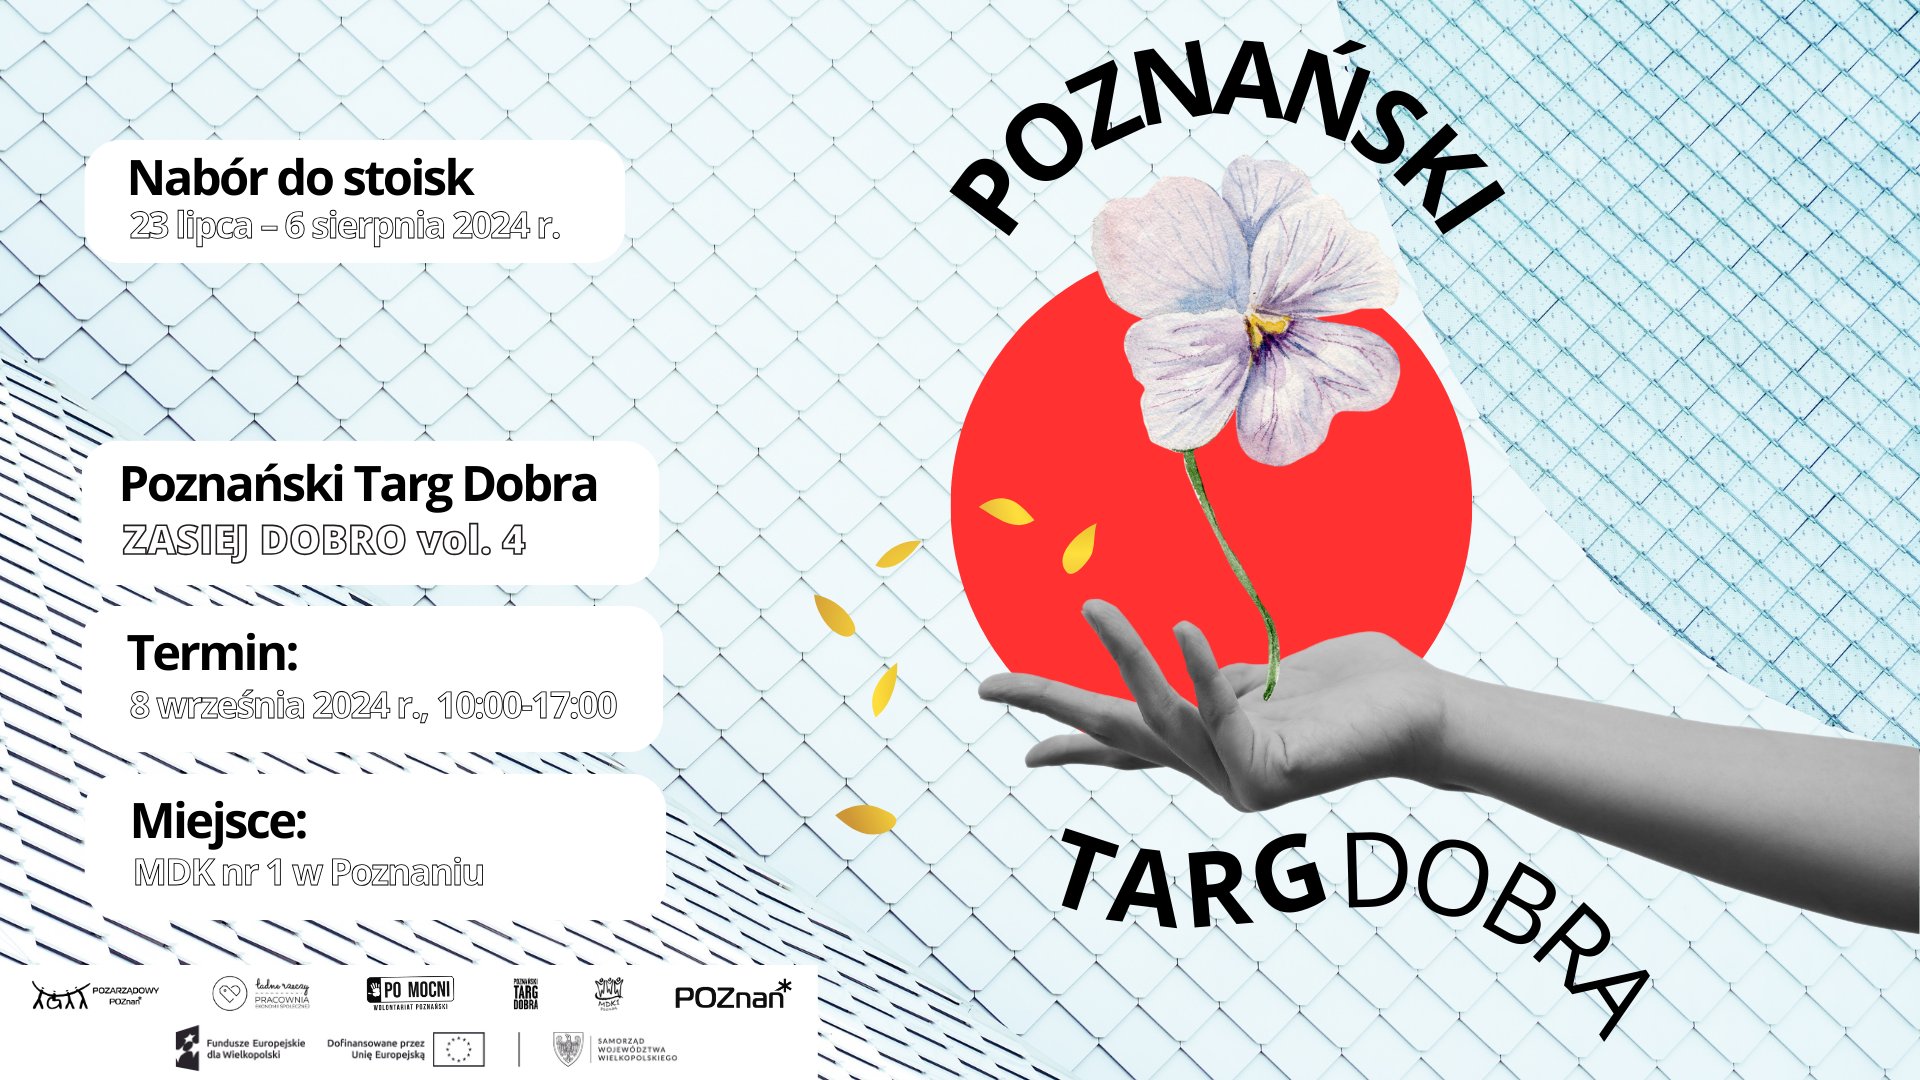 Rusza nabór wystawczyń i wystawców na Poznański Targ Dobra 2024!